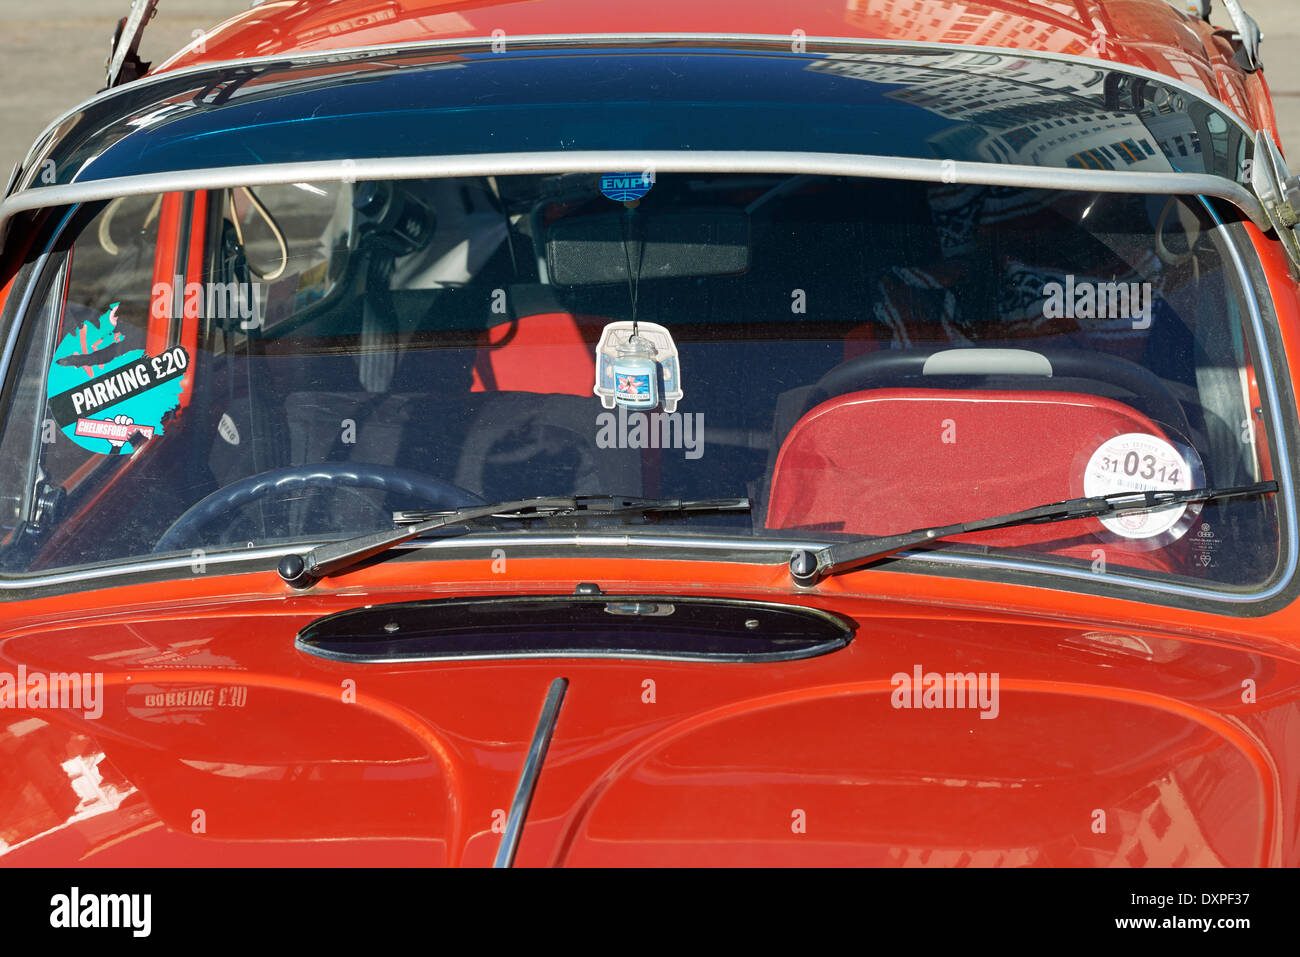 Ausgestattet mit einem VW-Käfer-Auto Sonnenblende Stockfotografie - Alamy